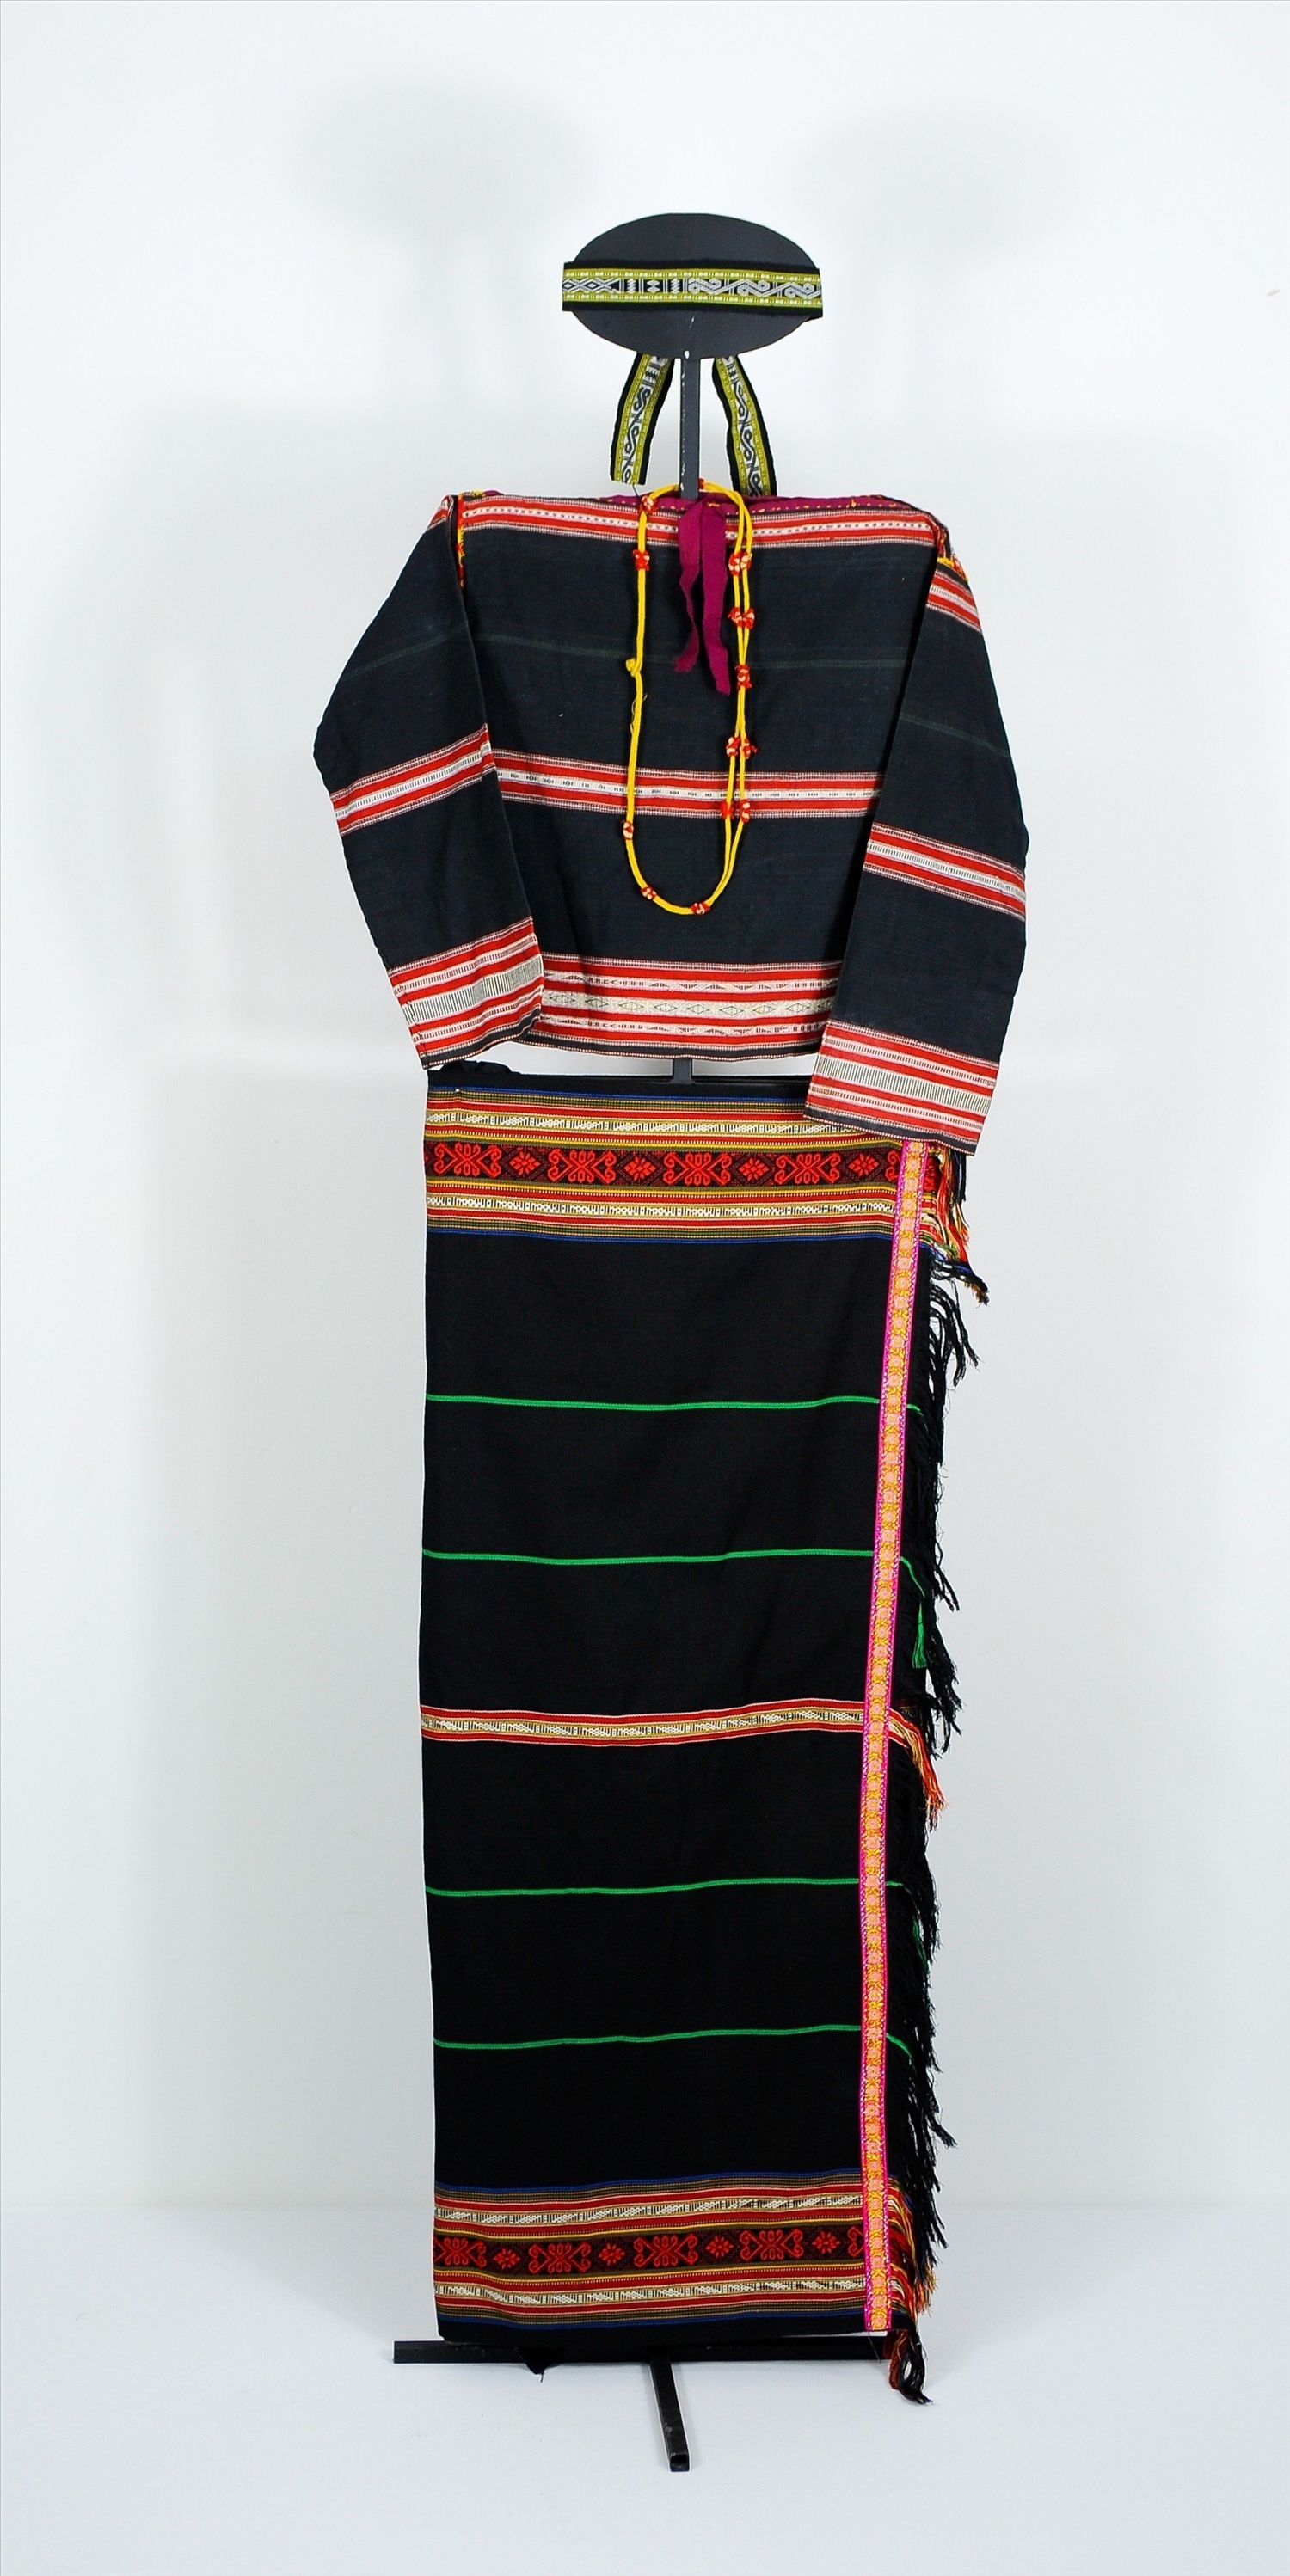 Trang phục nữ của dân tộc Jrai